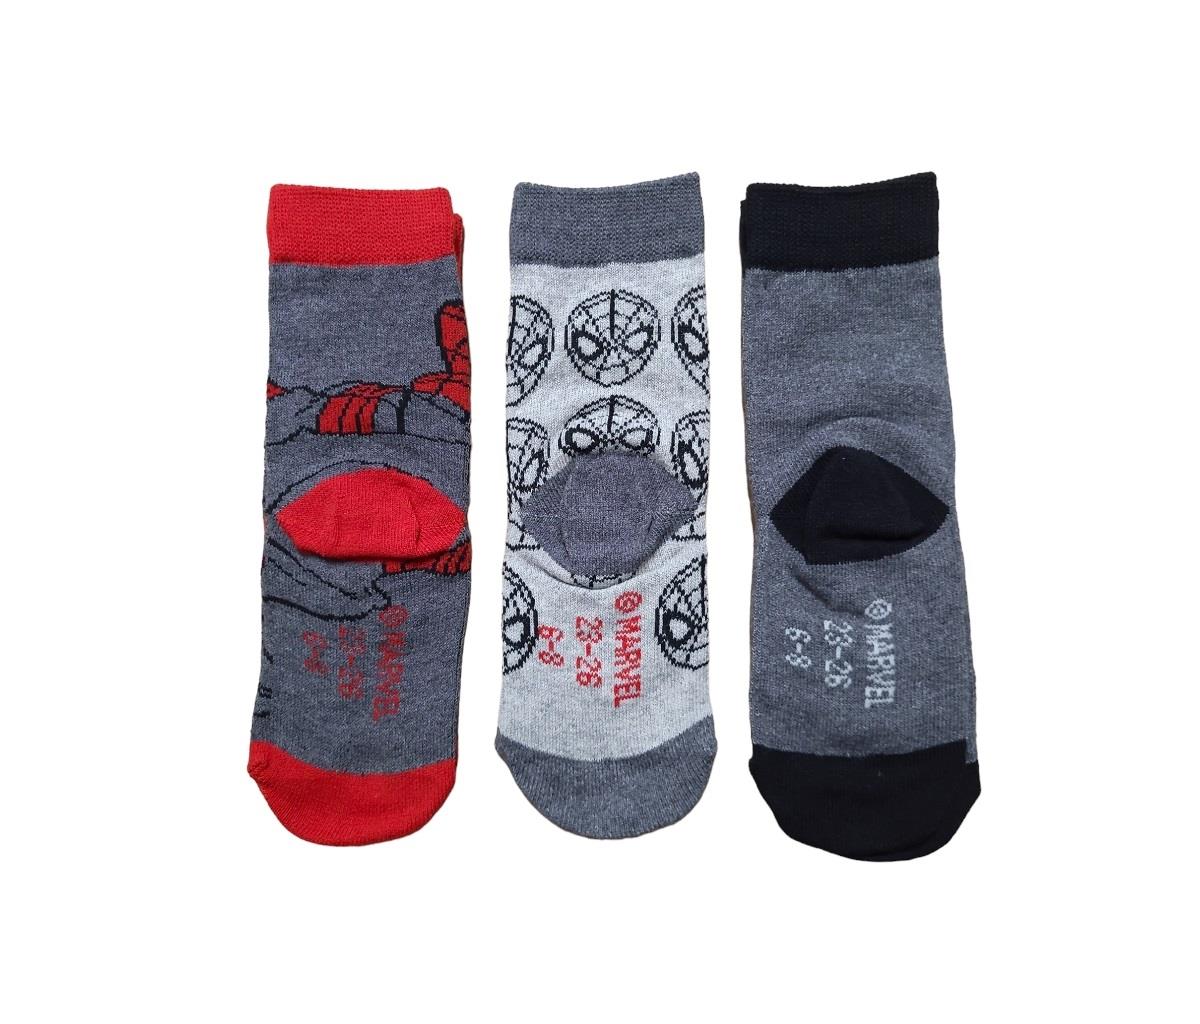 3 paar sokken Spider-Man